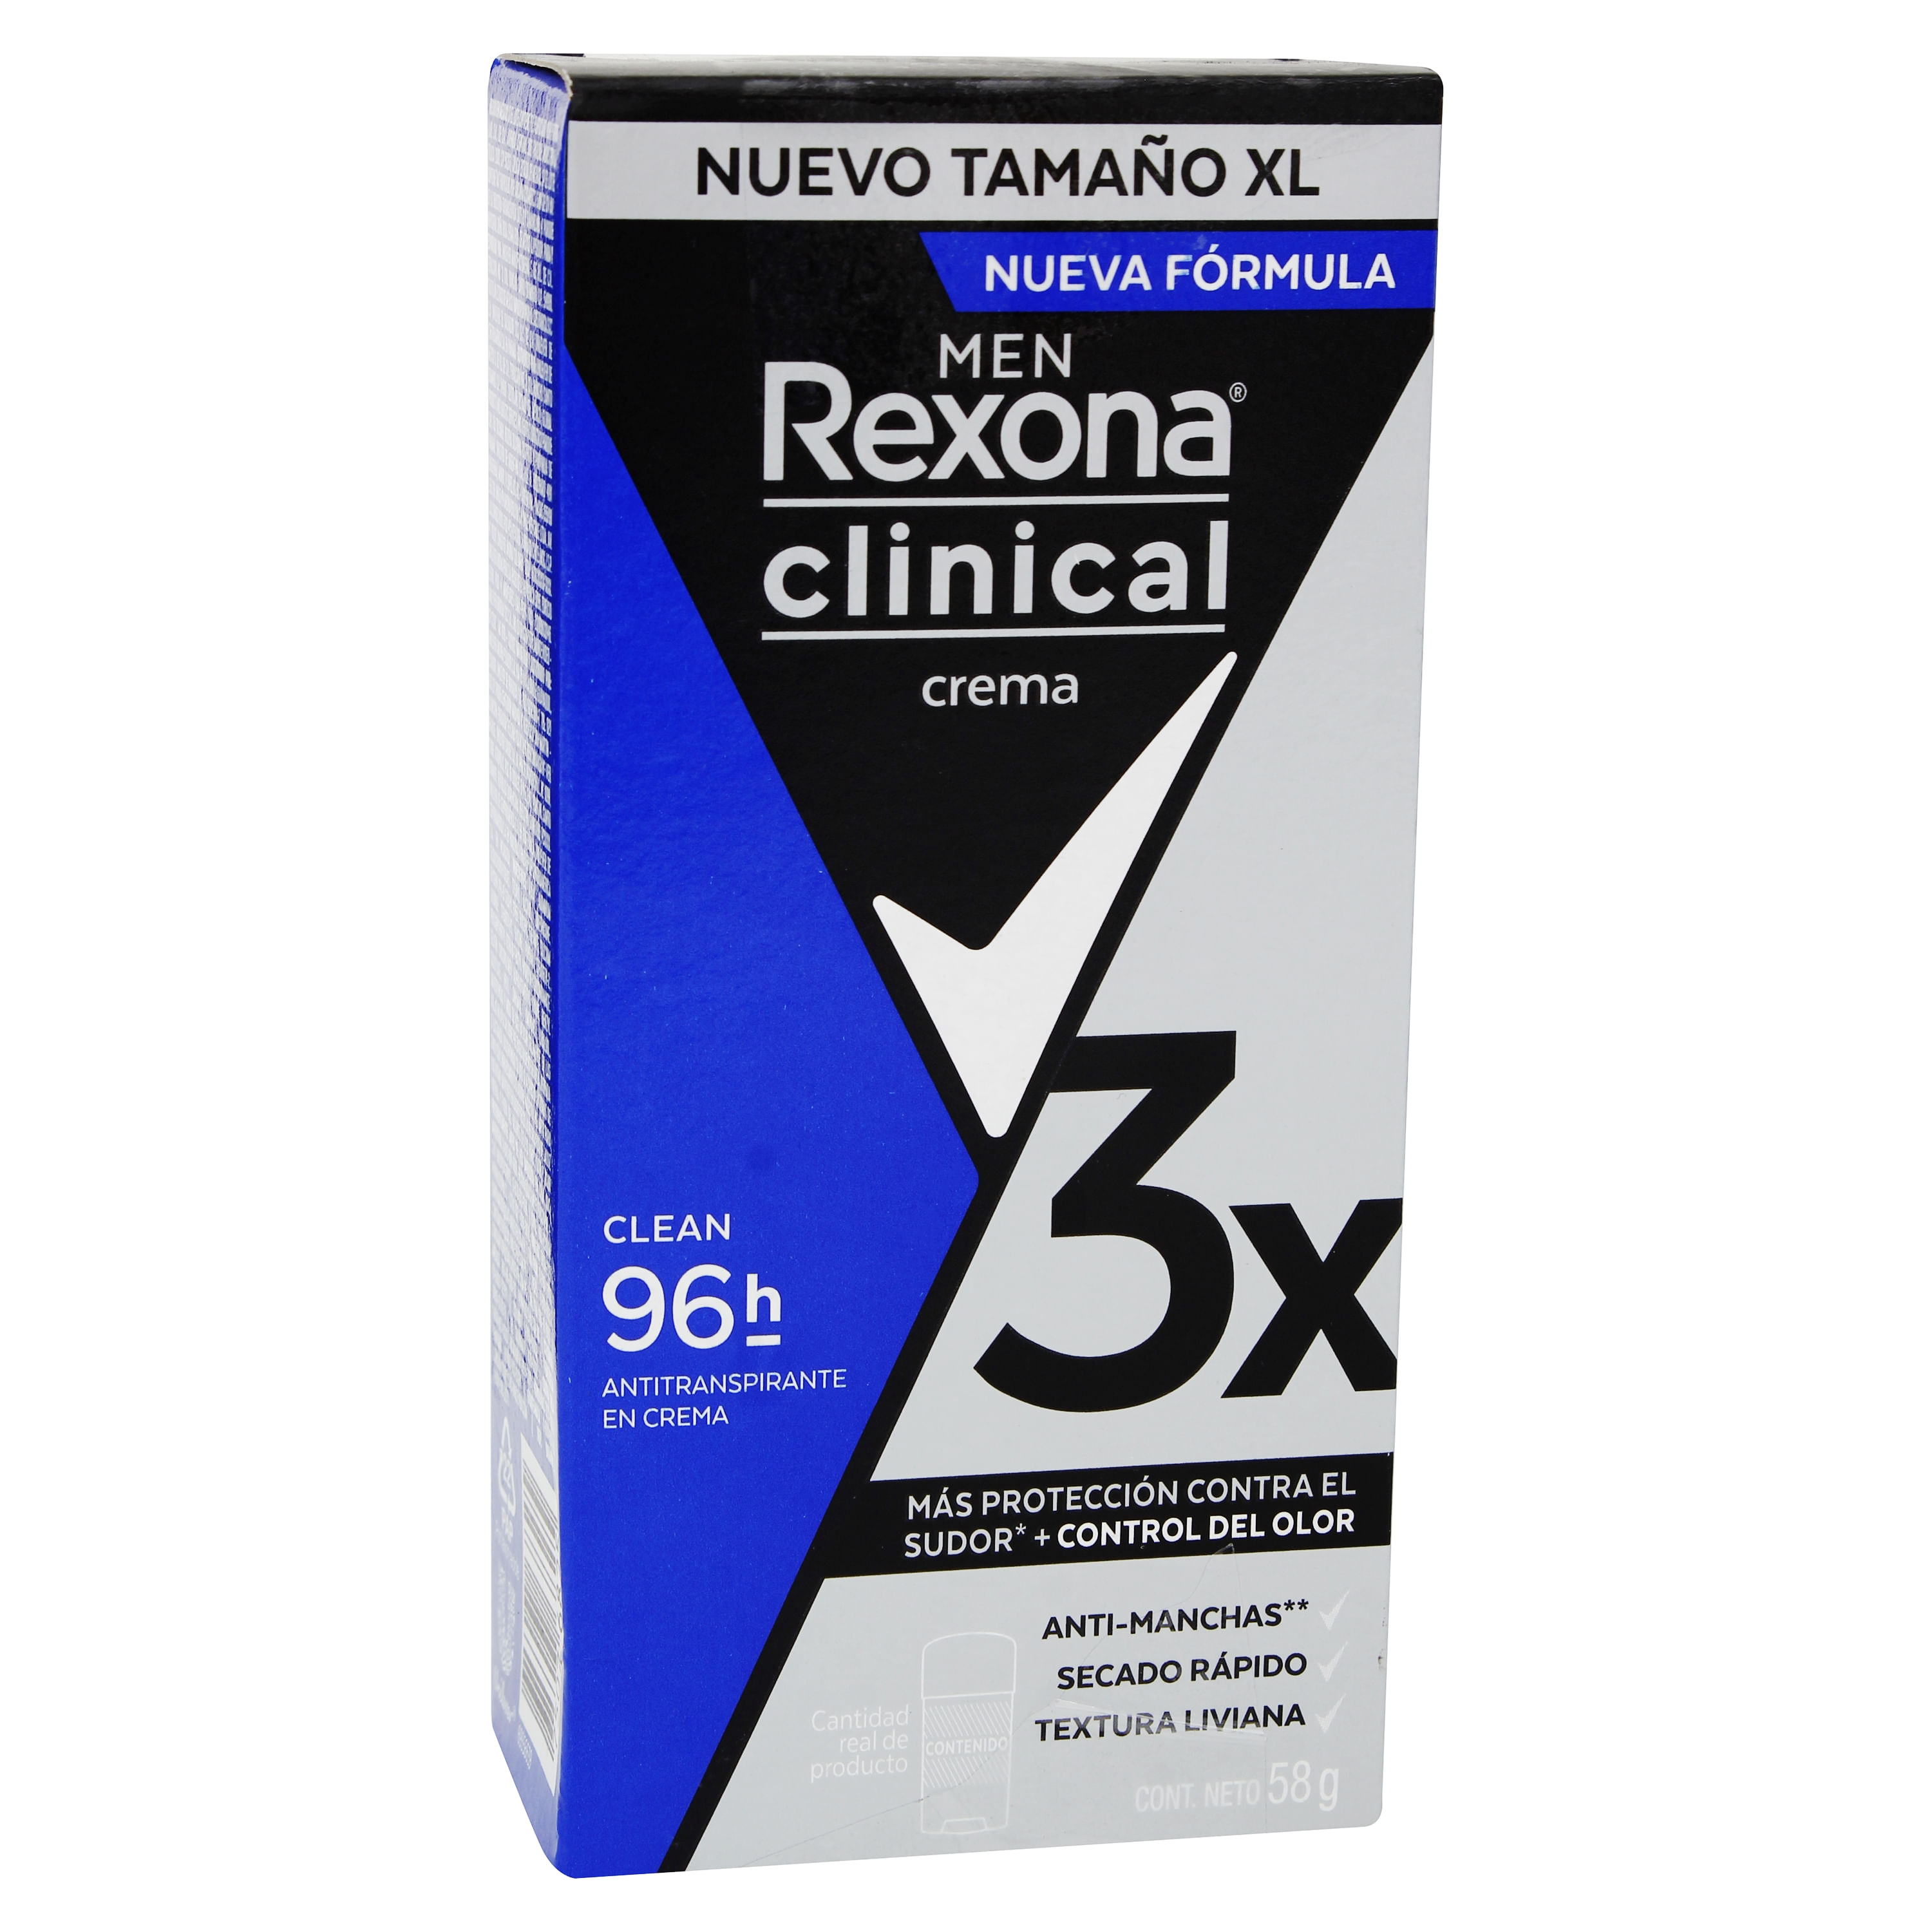 Antitranspirante Creme Classic Rexona Clinical 58G - Supermercado